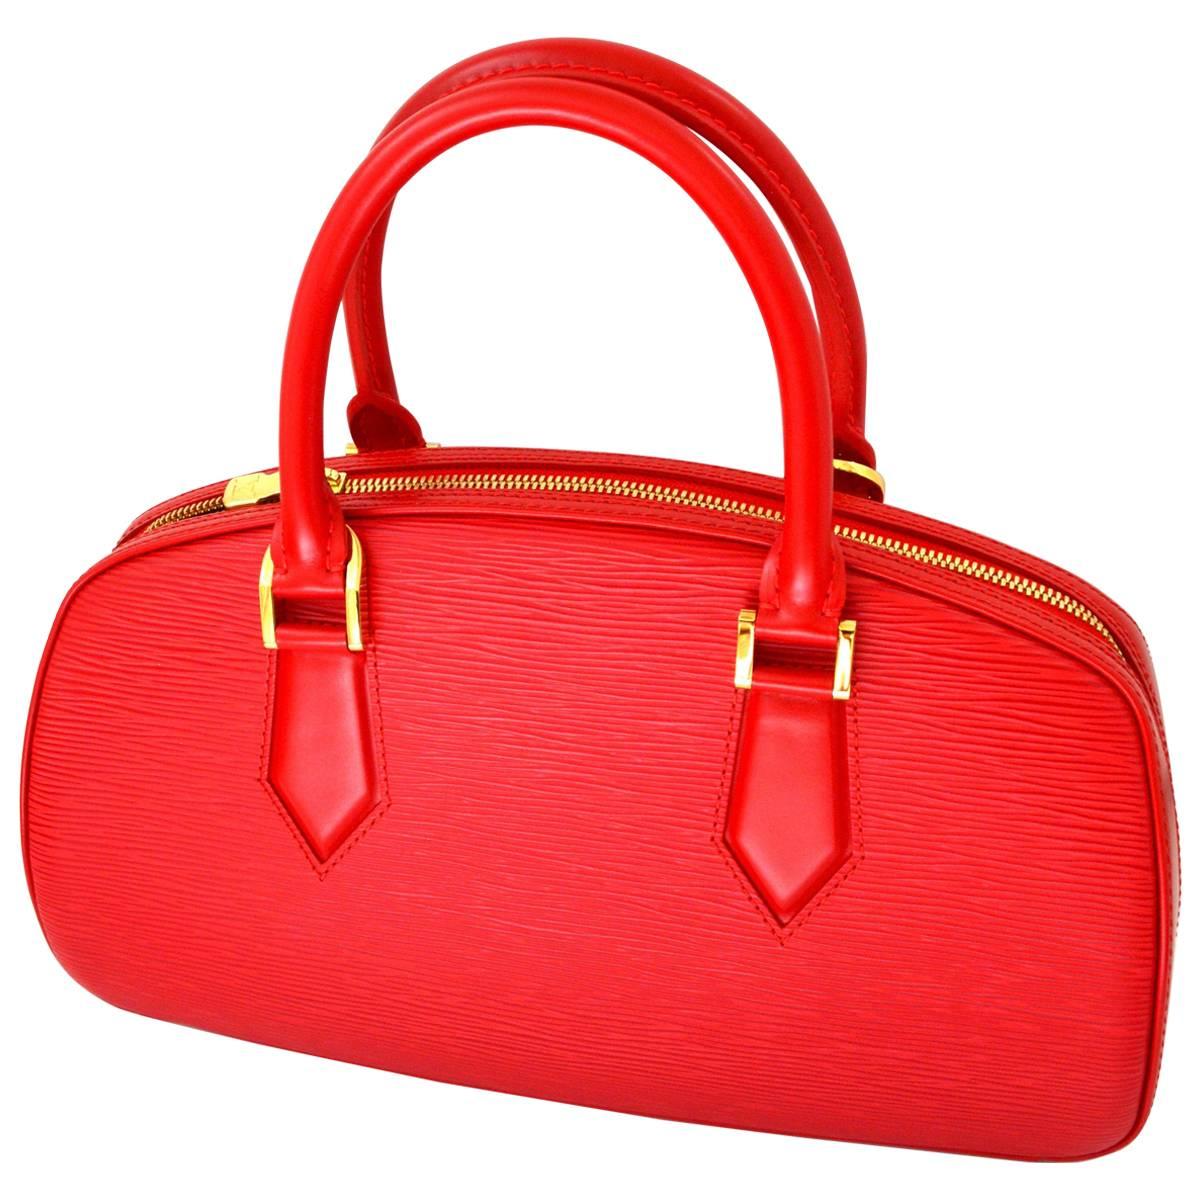 Louis Vuitton Red Speedy Epi Leather Bag